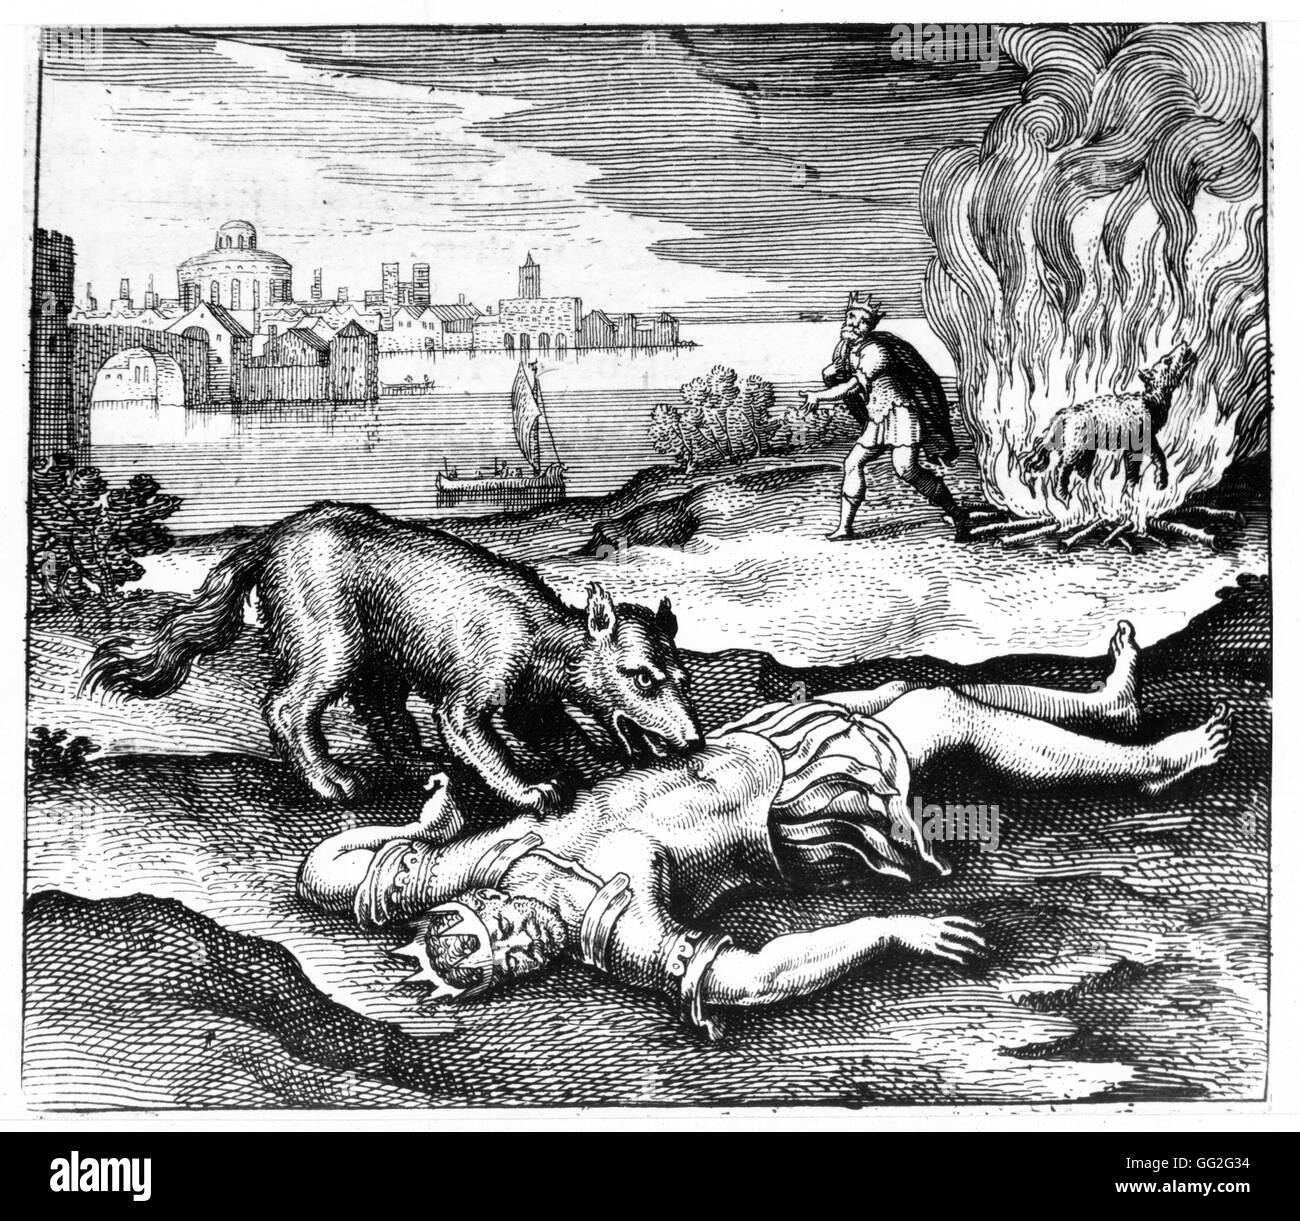 Michael Maier deutsche Schule der Wolf den König aß dann sobald gebrannt, kam des Königs wieder zum Leben 1618 Gravur aus 'Atalanta Fugiens' oder 'Flucht' Atalanta Stockfoto